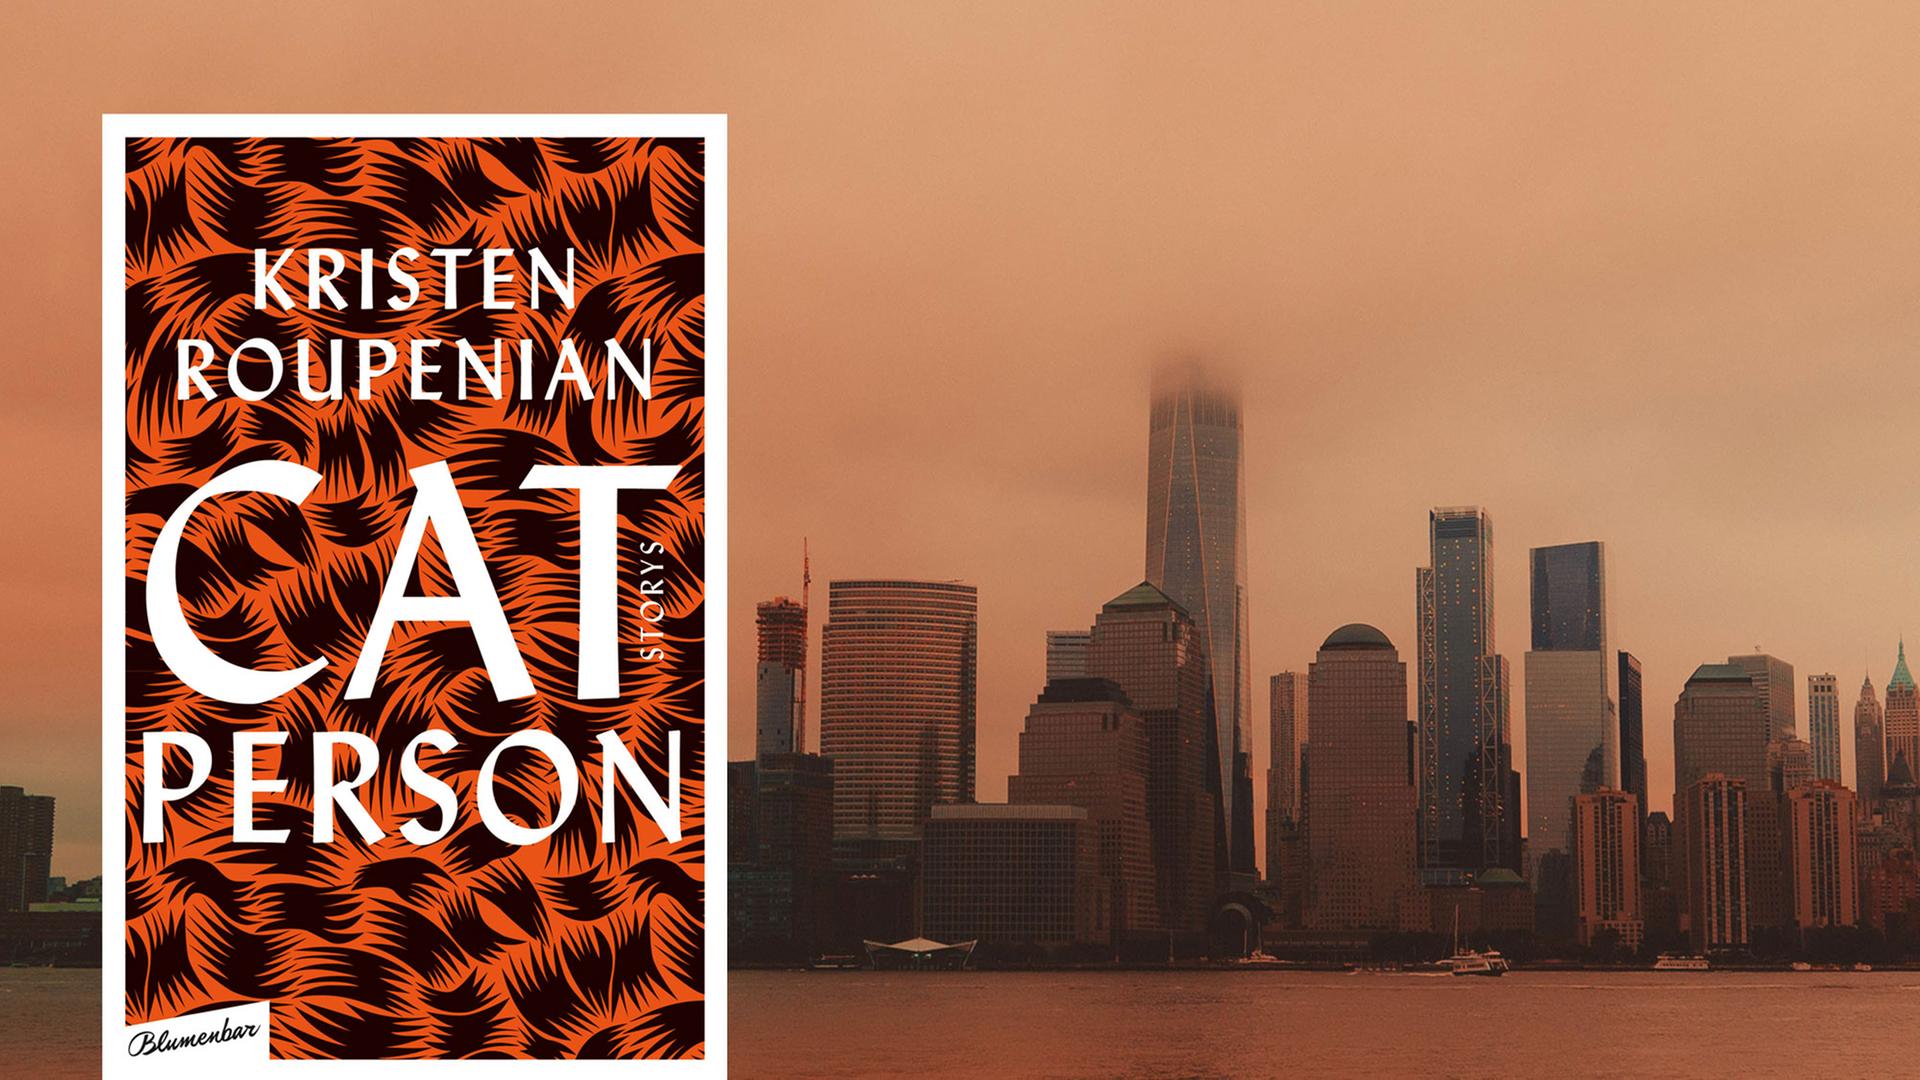 Buchcover: "Cat Person" von Kristen Roupenian